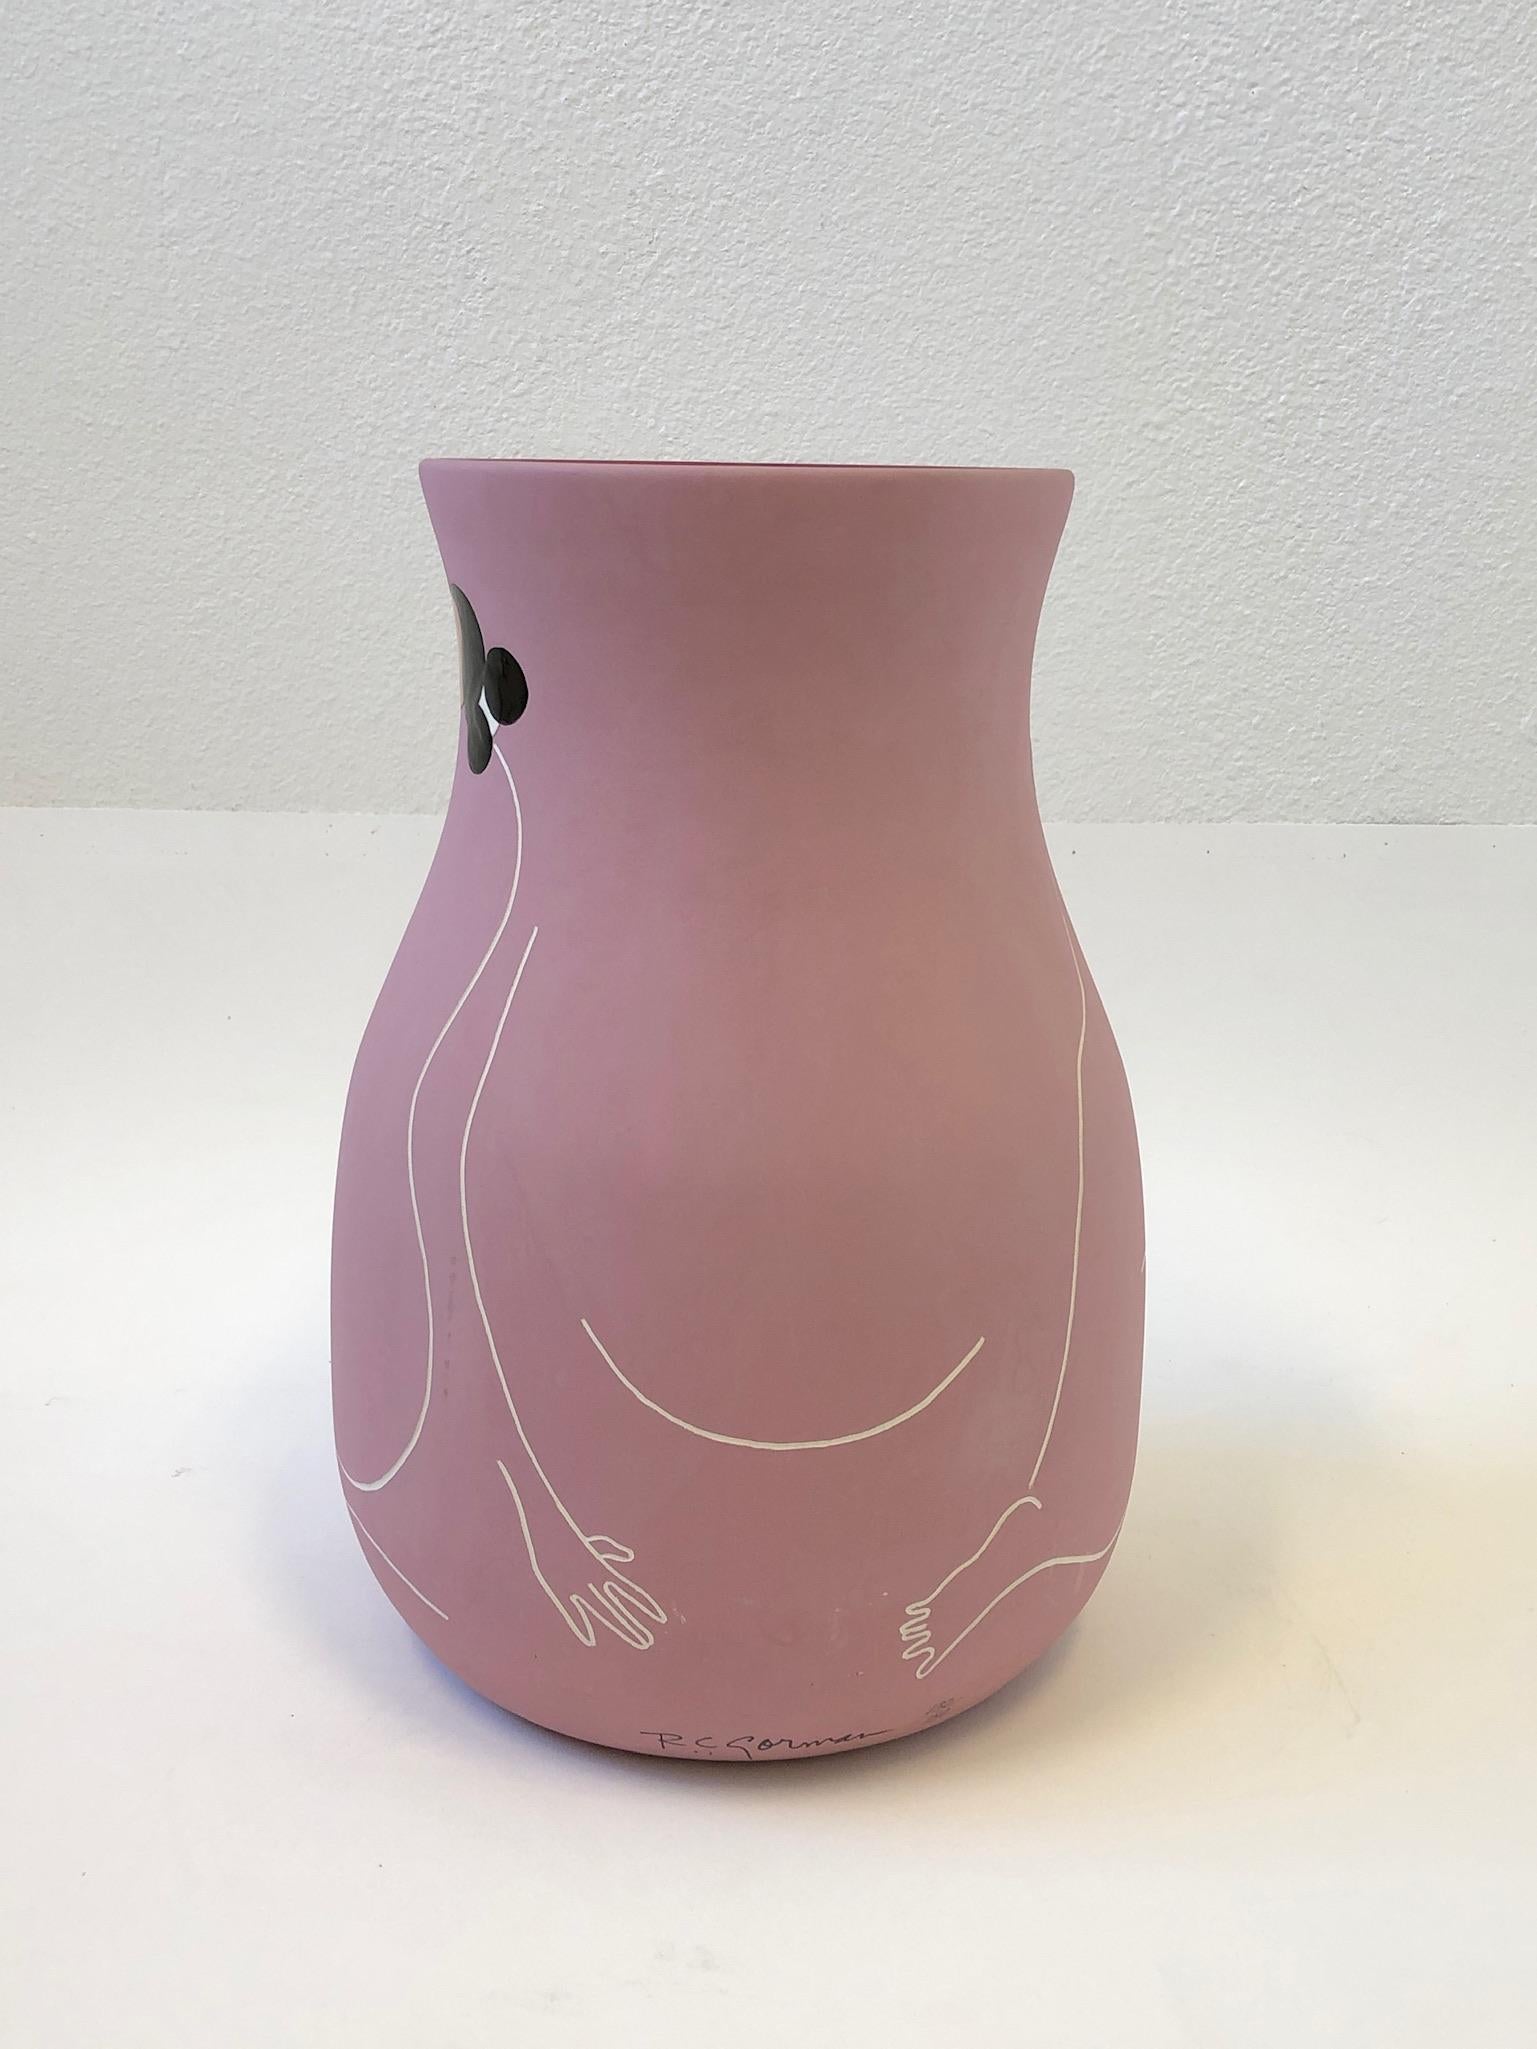 Native American Studio Ceramic Vase by Rudolph Carl Gorman